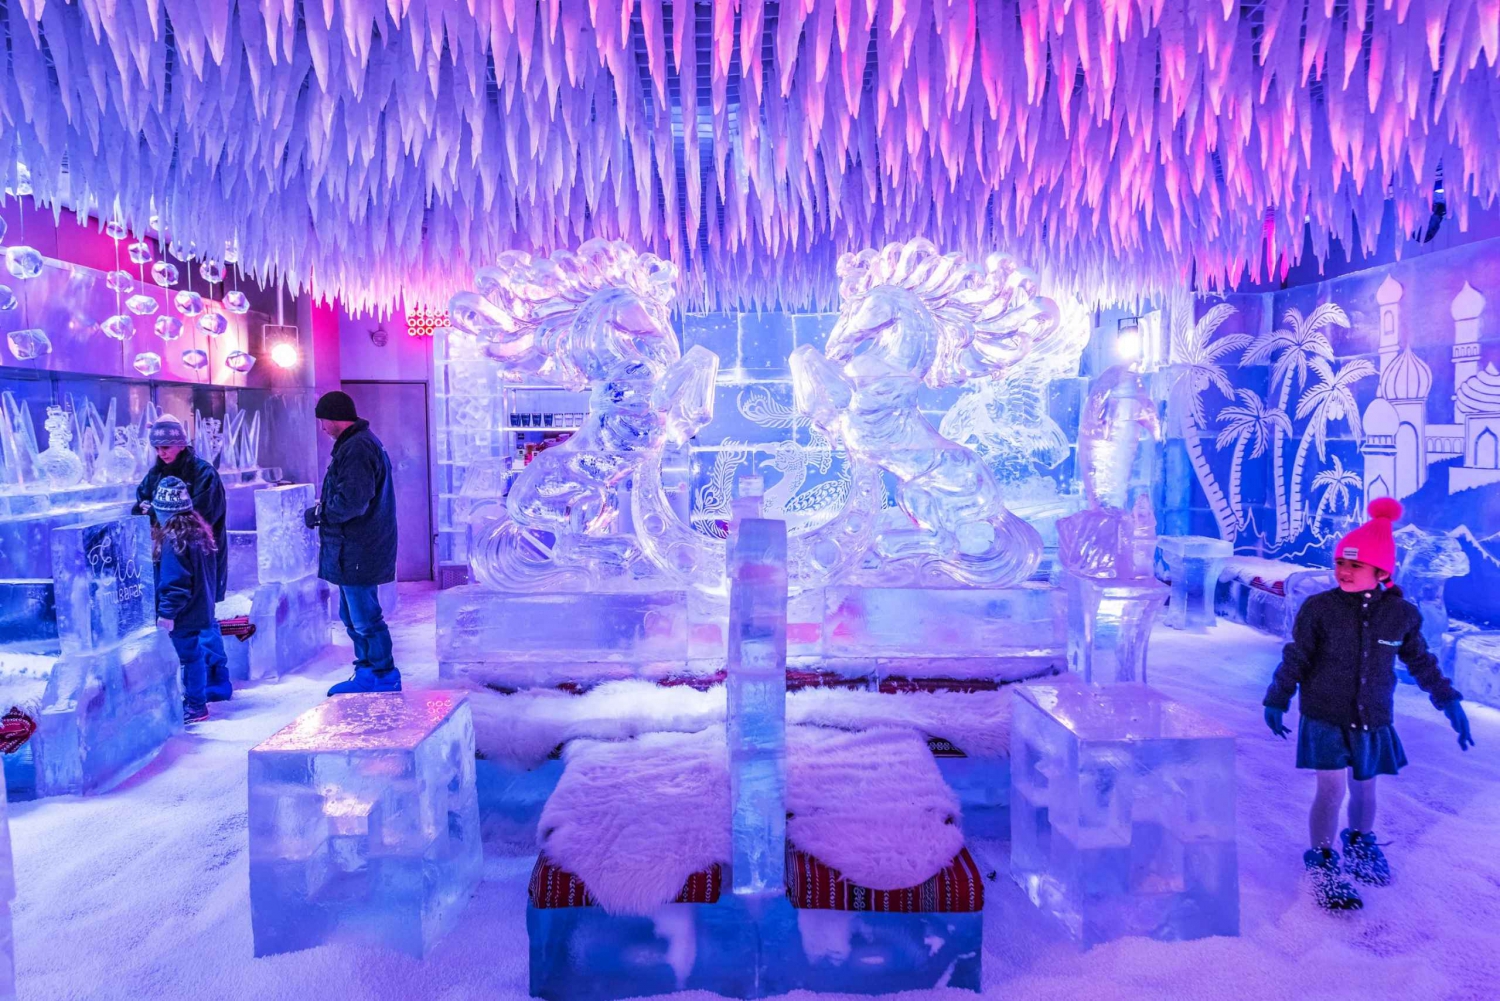 Dubai Chillout Ice Lounge: visita di 1 ora